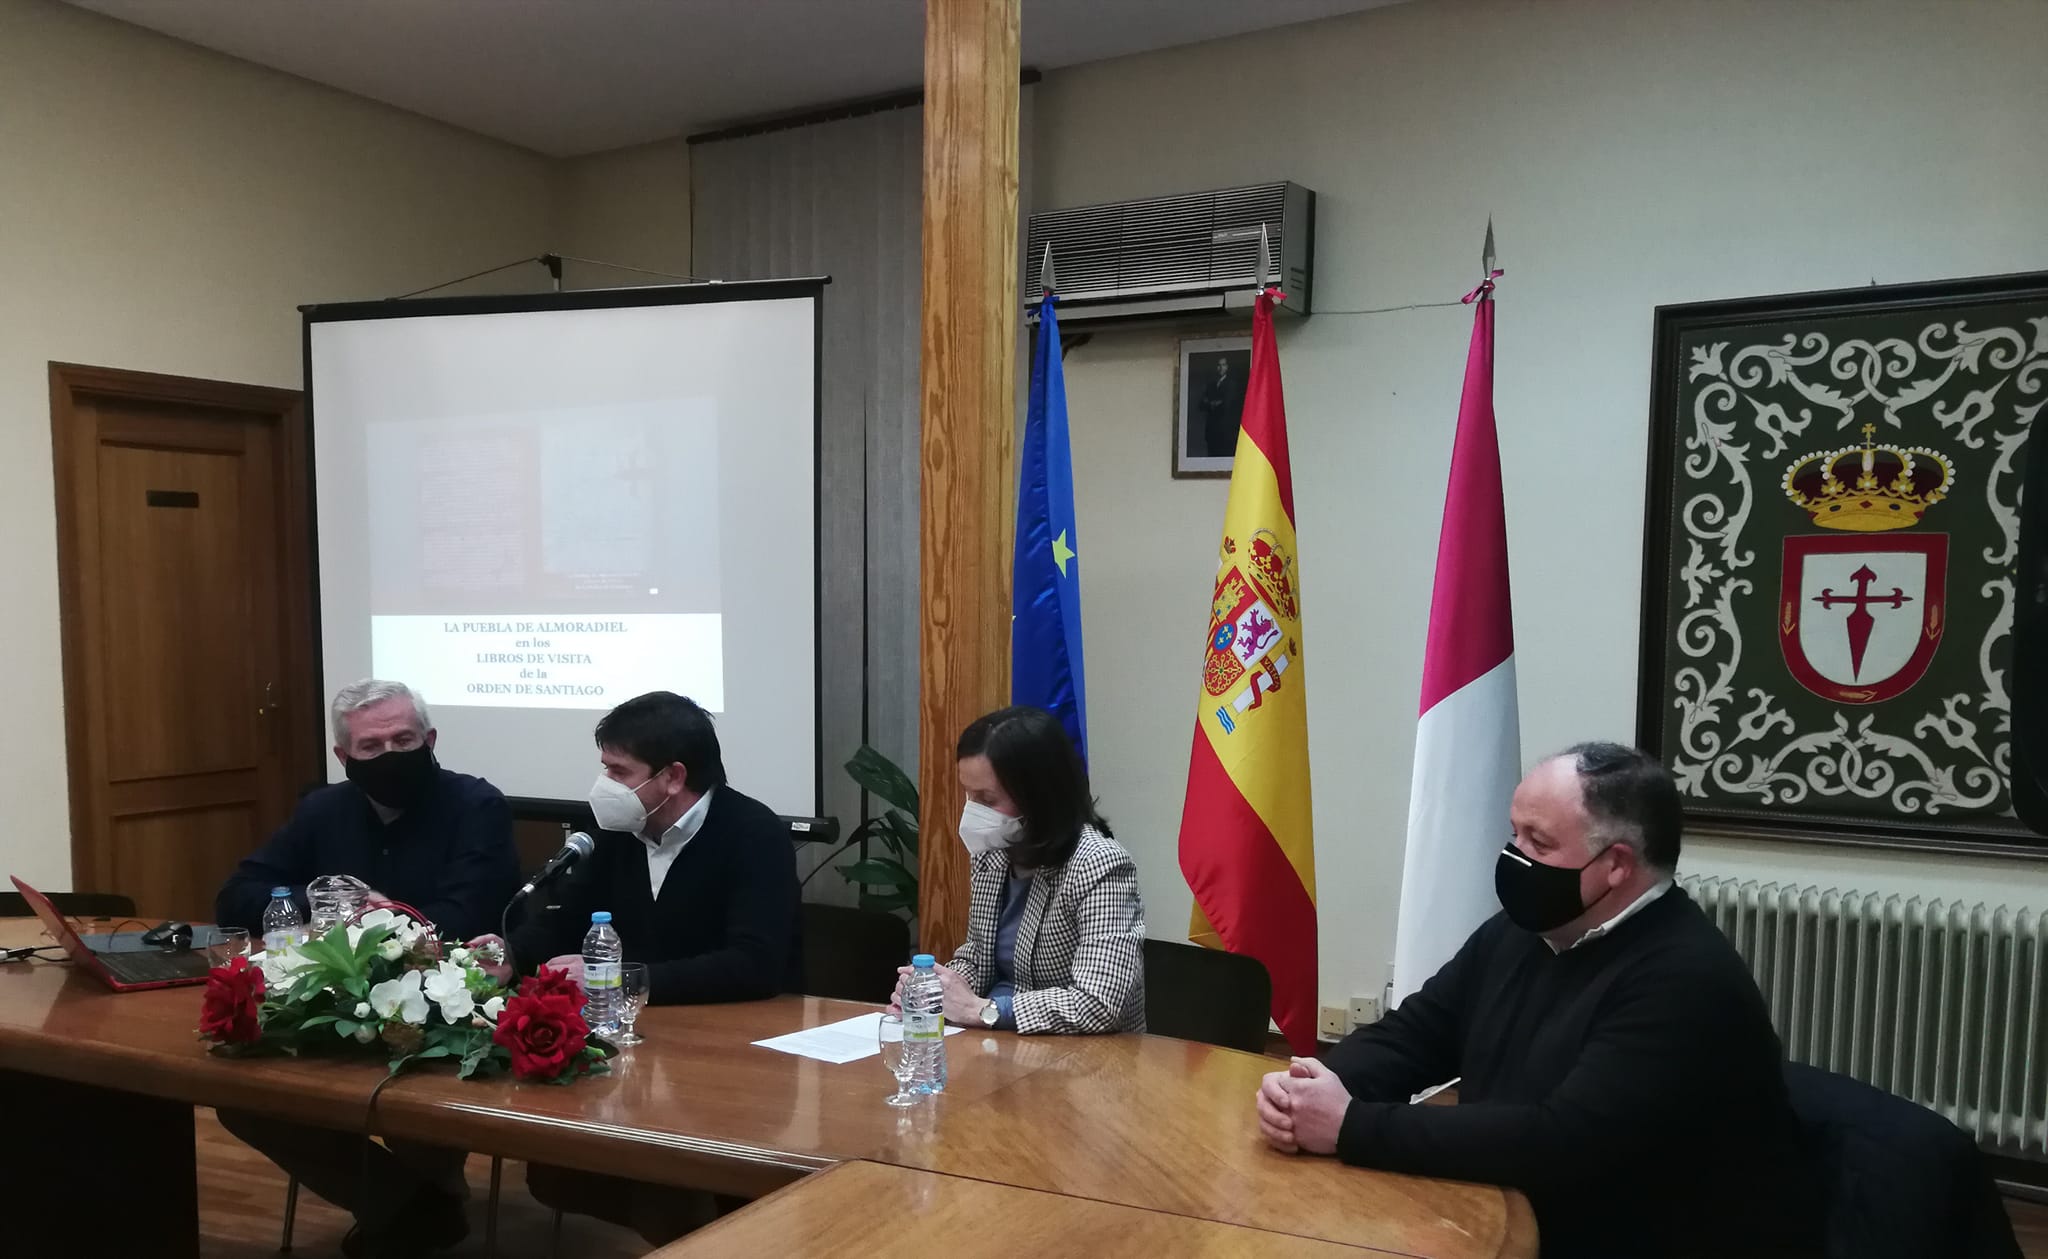 Presentación del Libro: La Puebla de Almoradiel en los Libros de Visita de la Orden de Santiago